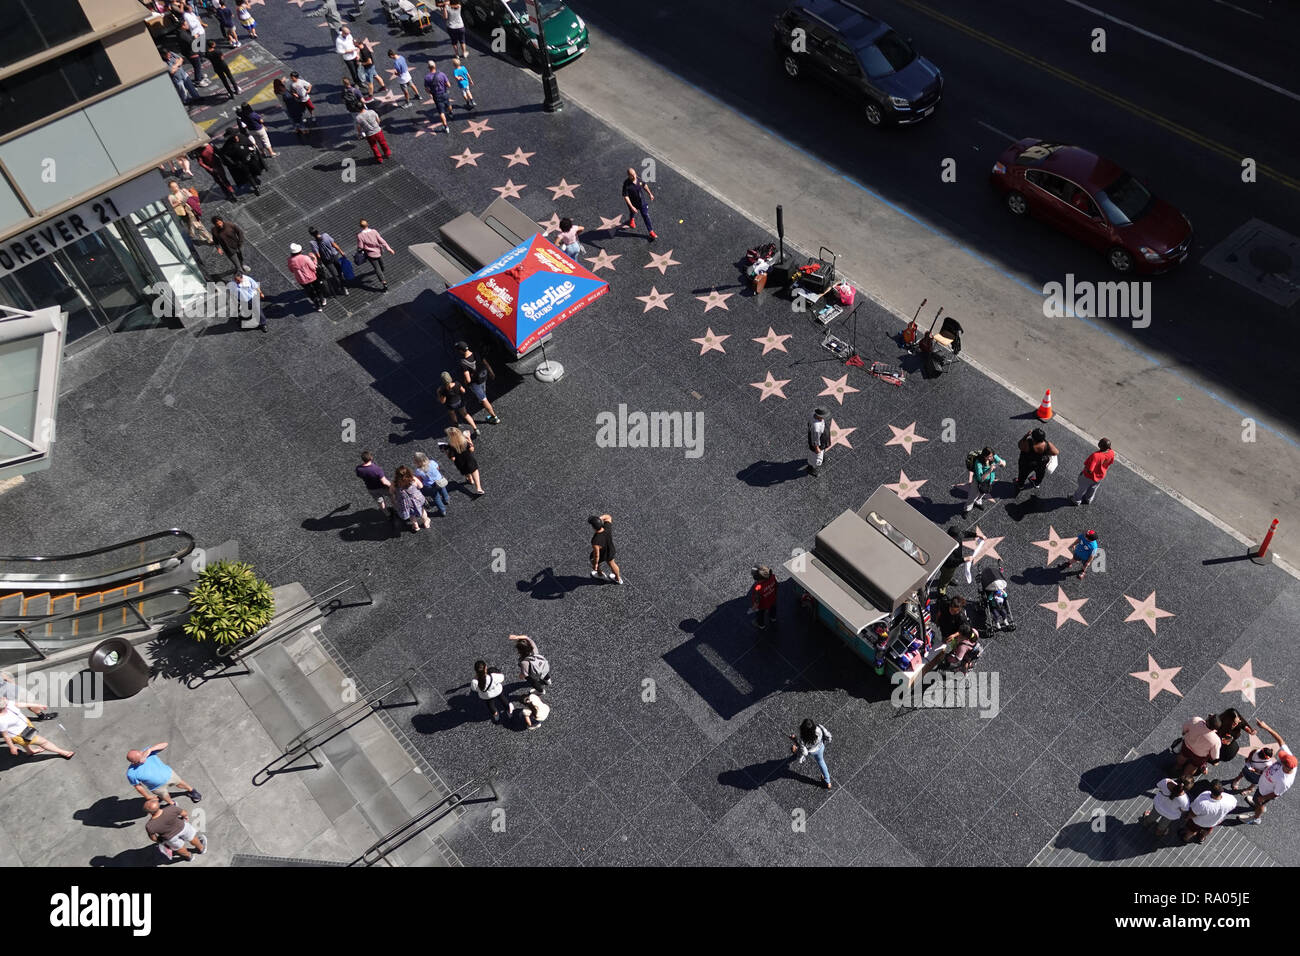 Los Angeles, CA/USA, Sept. 29, 2018: The Hollywood Walk of Fame in Hollywood und Highland Center befindet sich in einer erhöhten Ansicht während des Tages dargestellt. Stockfoto